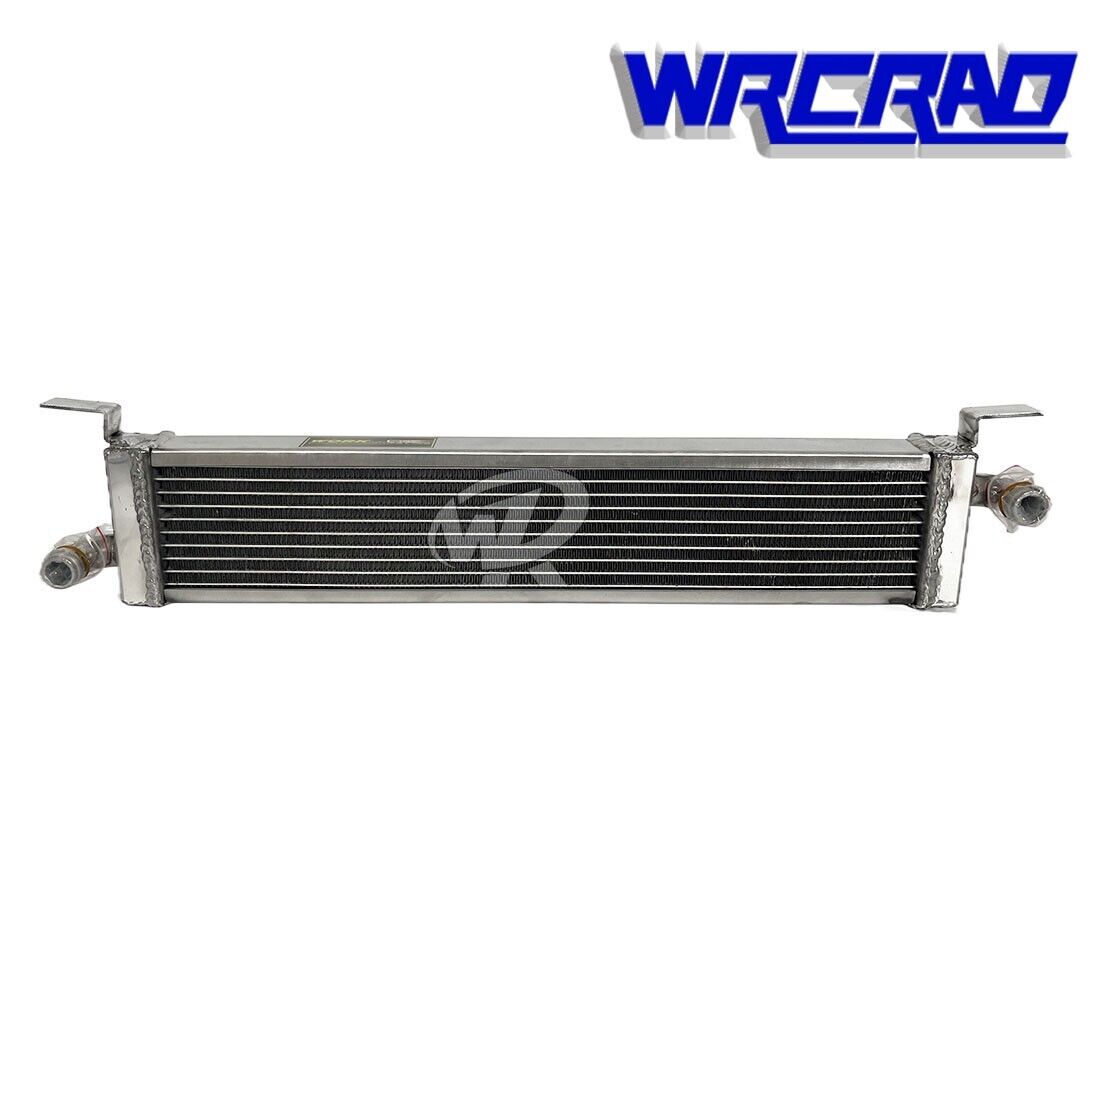 For Kitfox 1997 w/Rotax 532/582/618 670 2-Stroke Engine Aluminum Radiator 2 Row